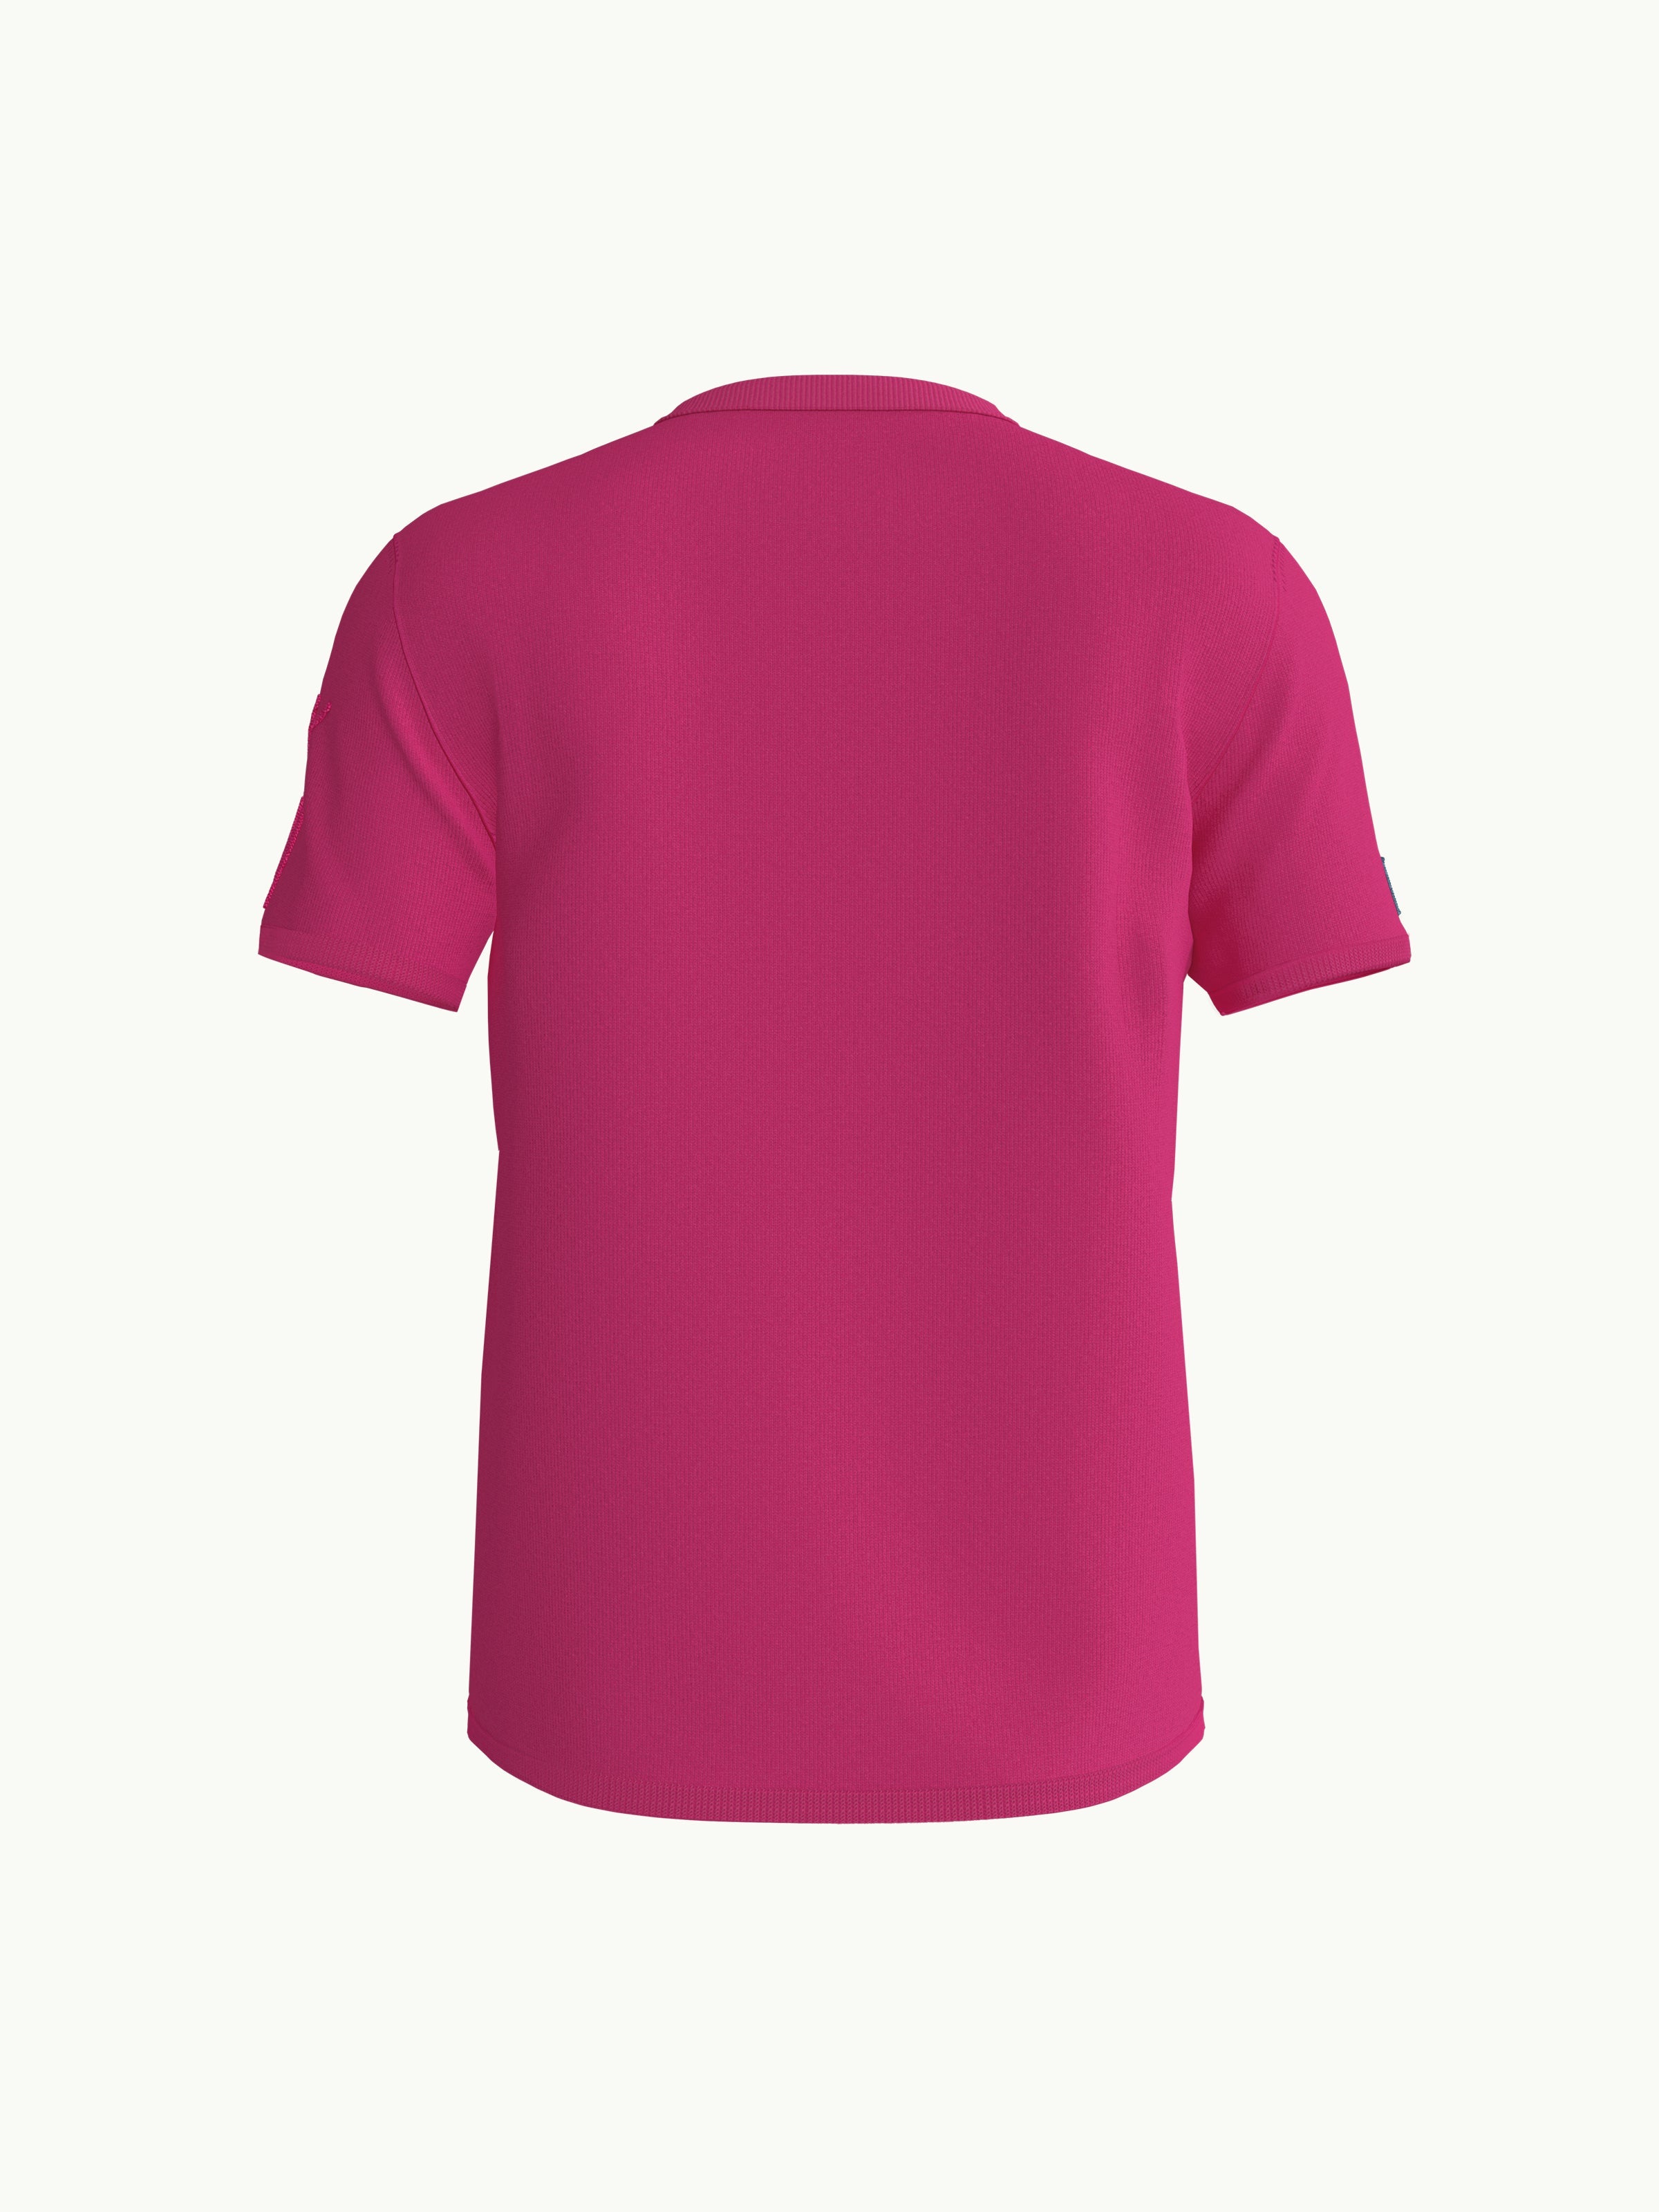 Women's T-Shirt - Butterfly Pink